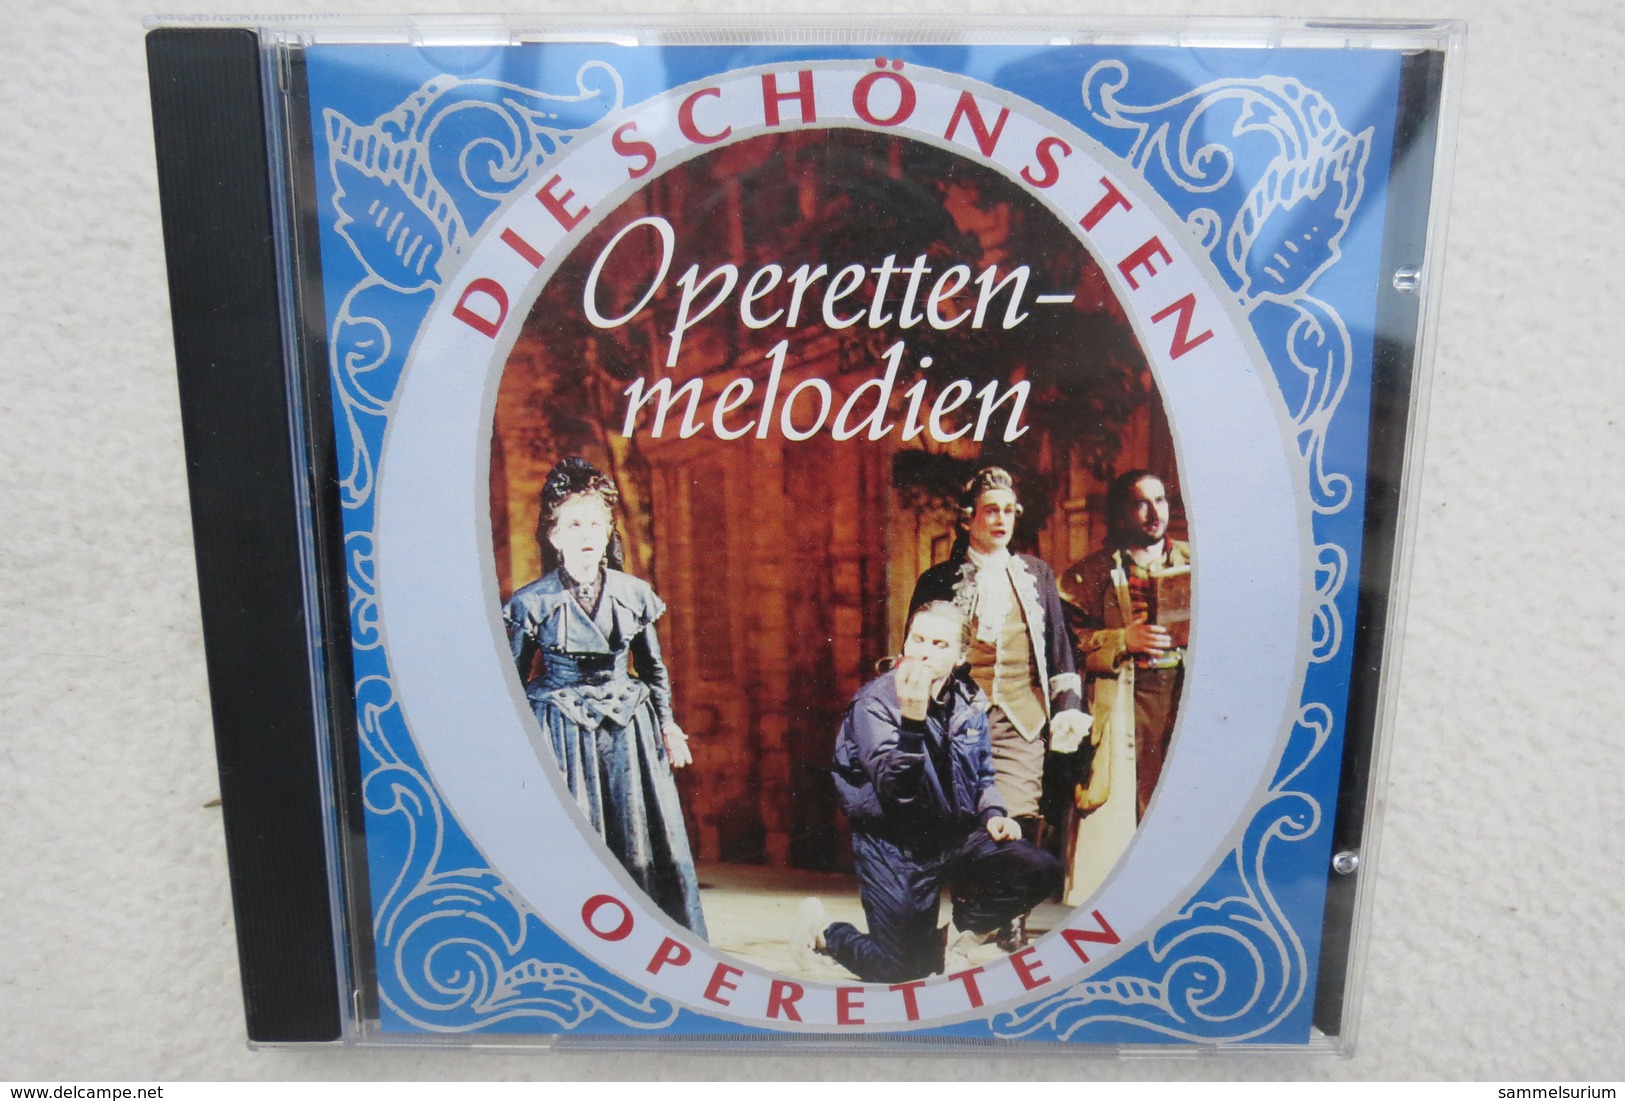 CD "Die Schönsten Operetten" Operettenmelodien - Oper & Operette